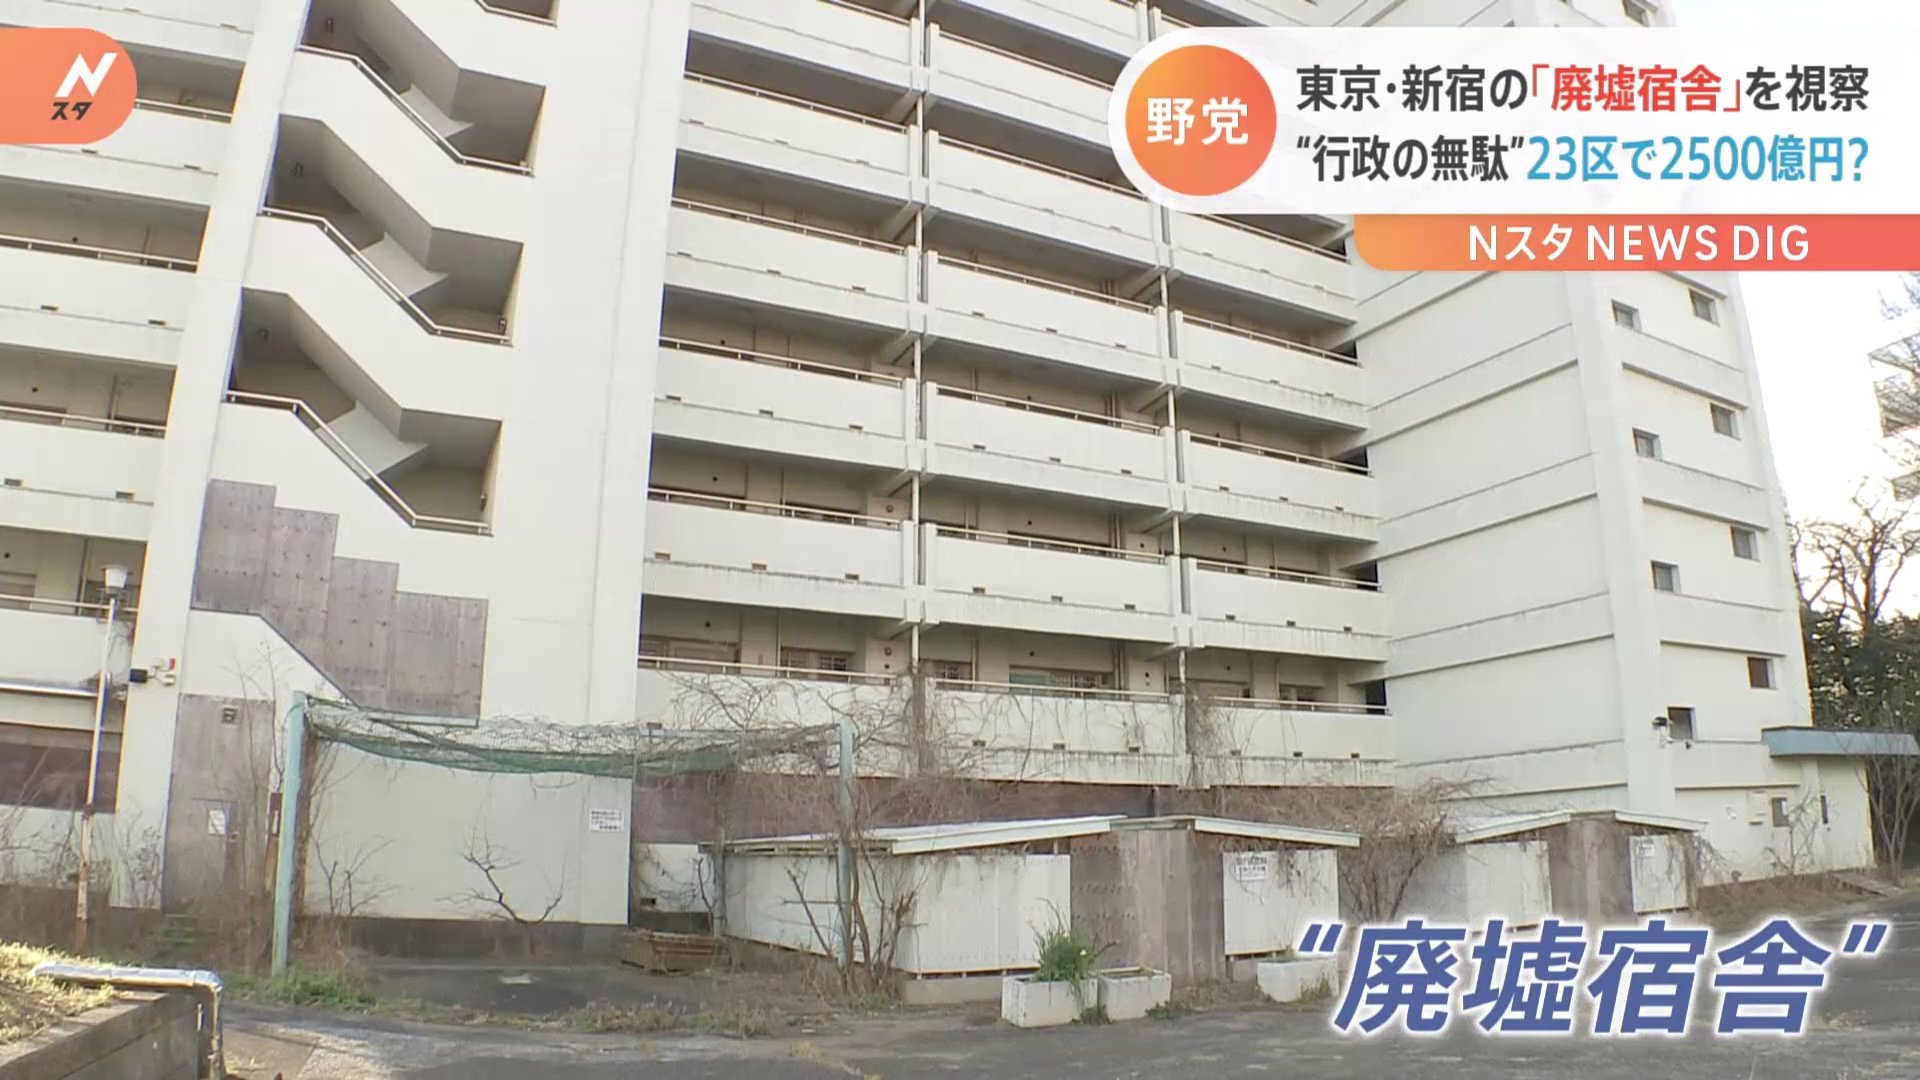 東京・新宿の「廃墟宿舎」を視察 “行政の無駄” 23区で2500億円？